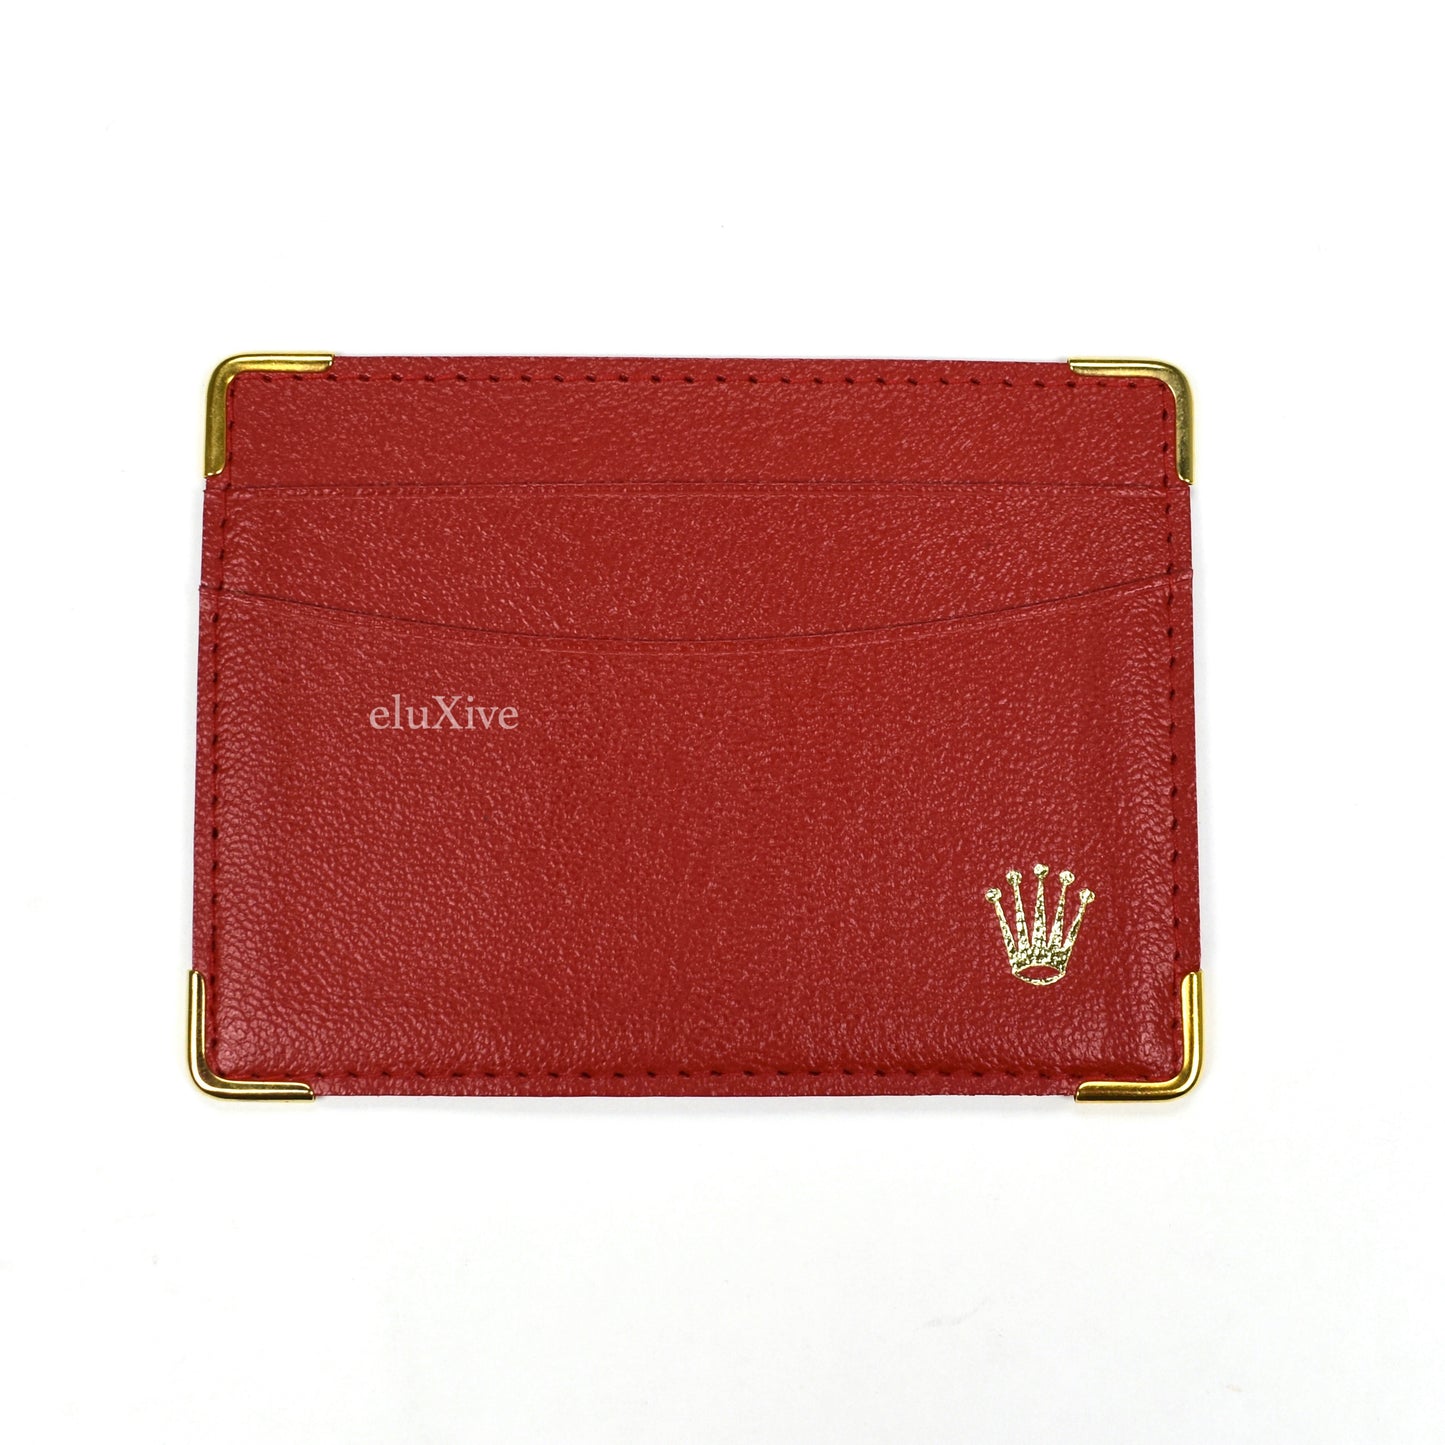 Rolex - Dark Red Leather Card Case